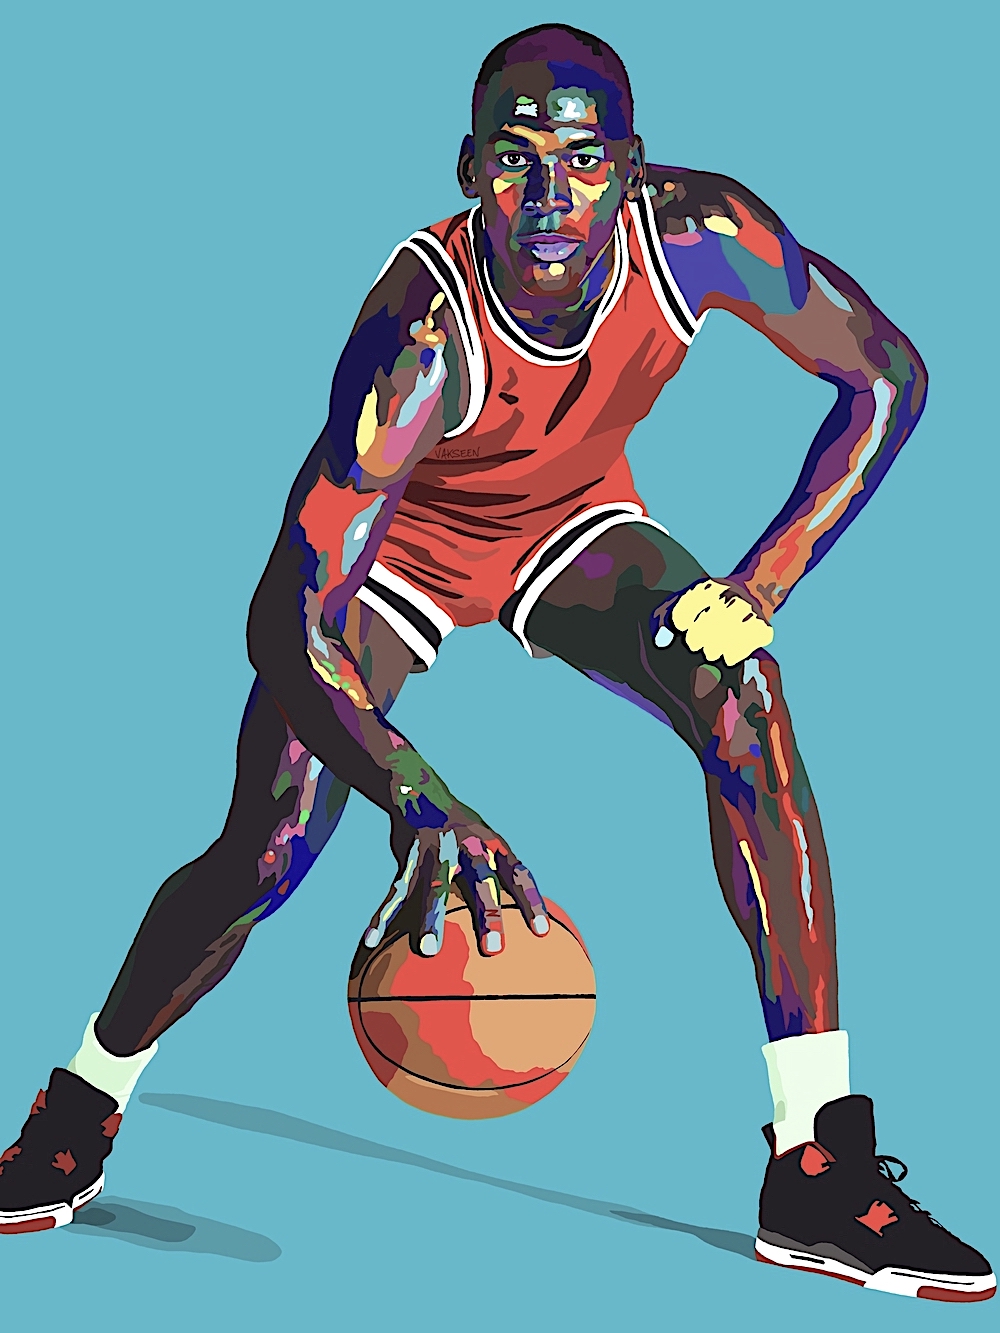 art by Vakseen, basketballer